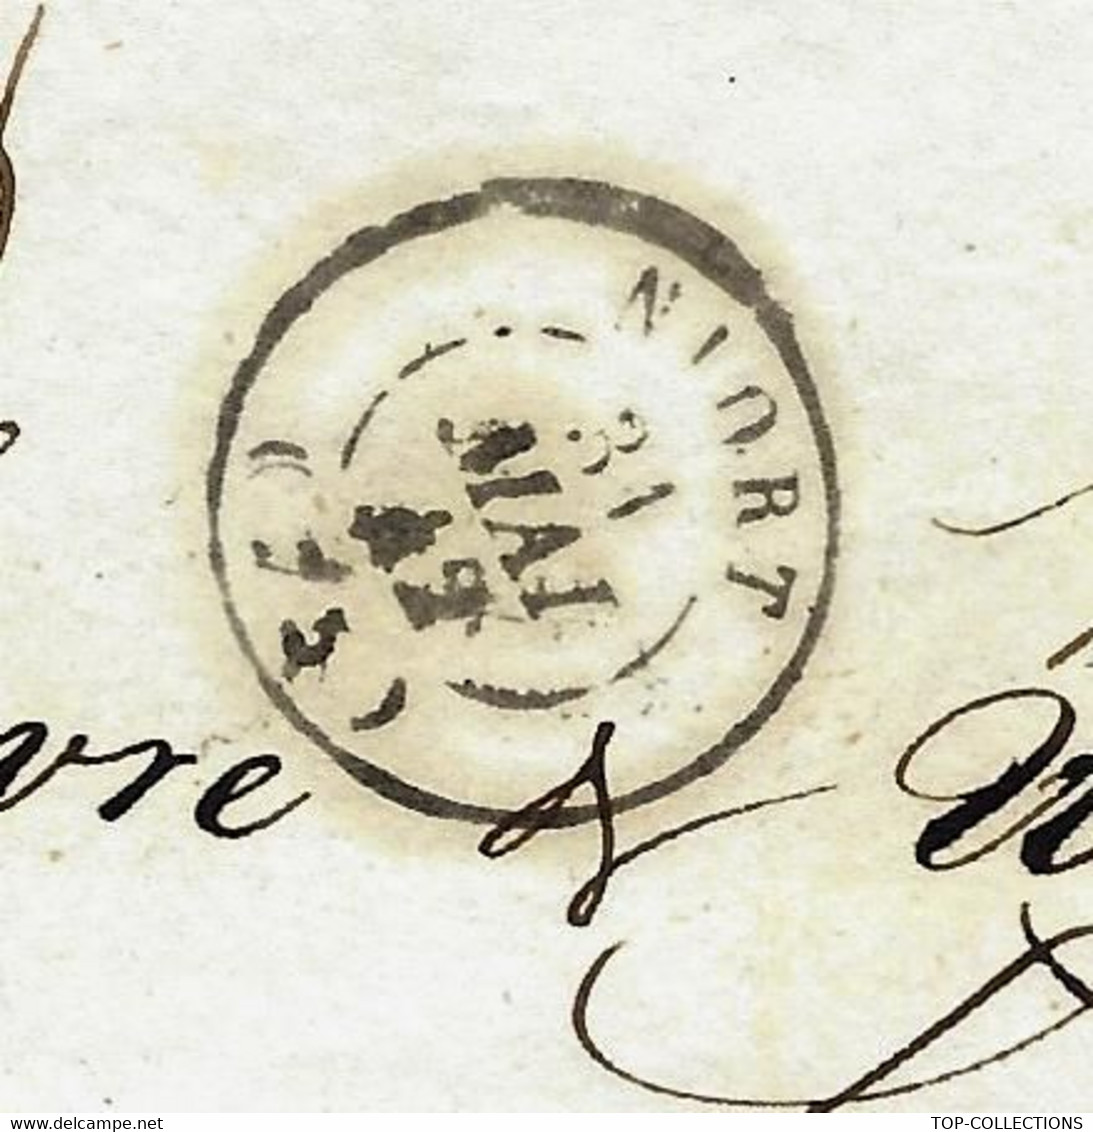 1842 Entête Giraudeau à Niort Deux Sèvres Huile Peaux Gants Pour Favre & Wetzel Huiles  Lille V.TEXTE  COLZA RECOLTE - 1800 – 1899